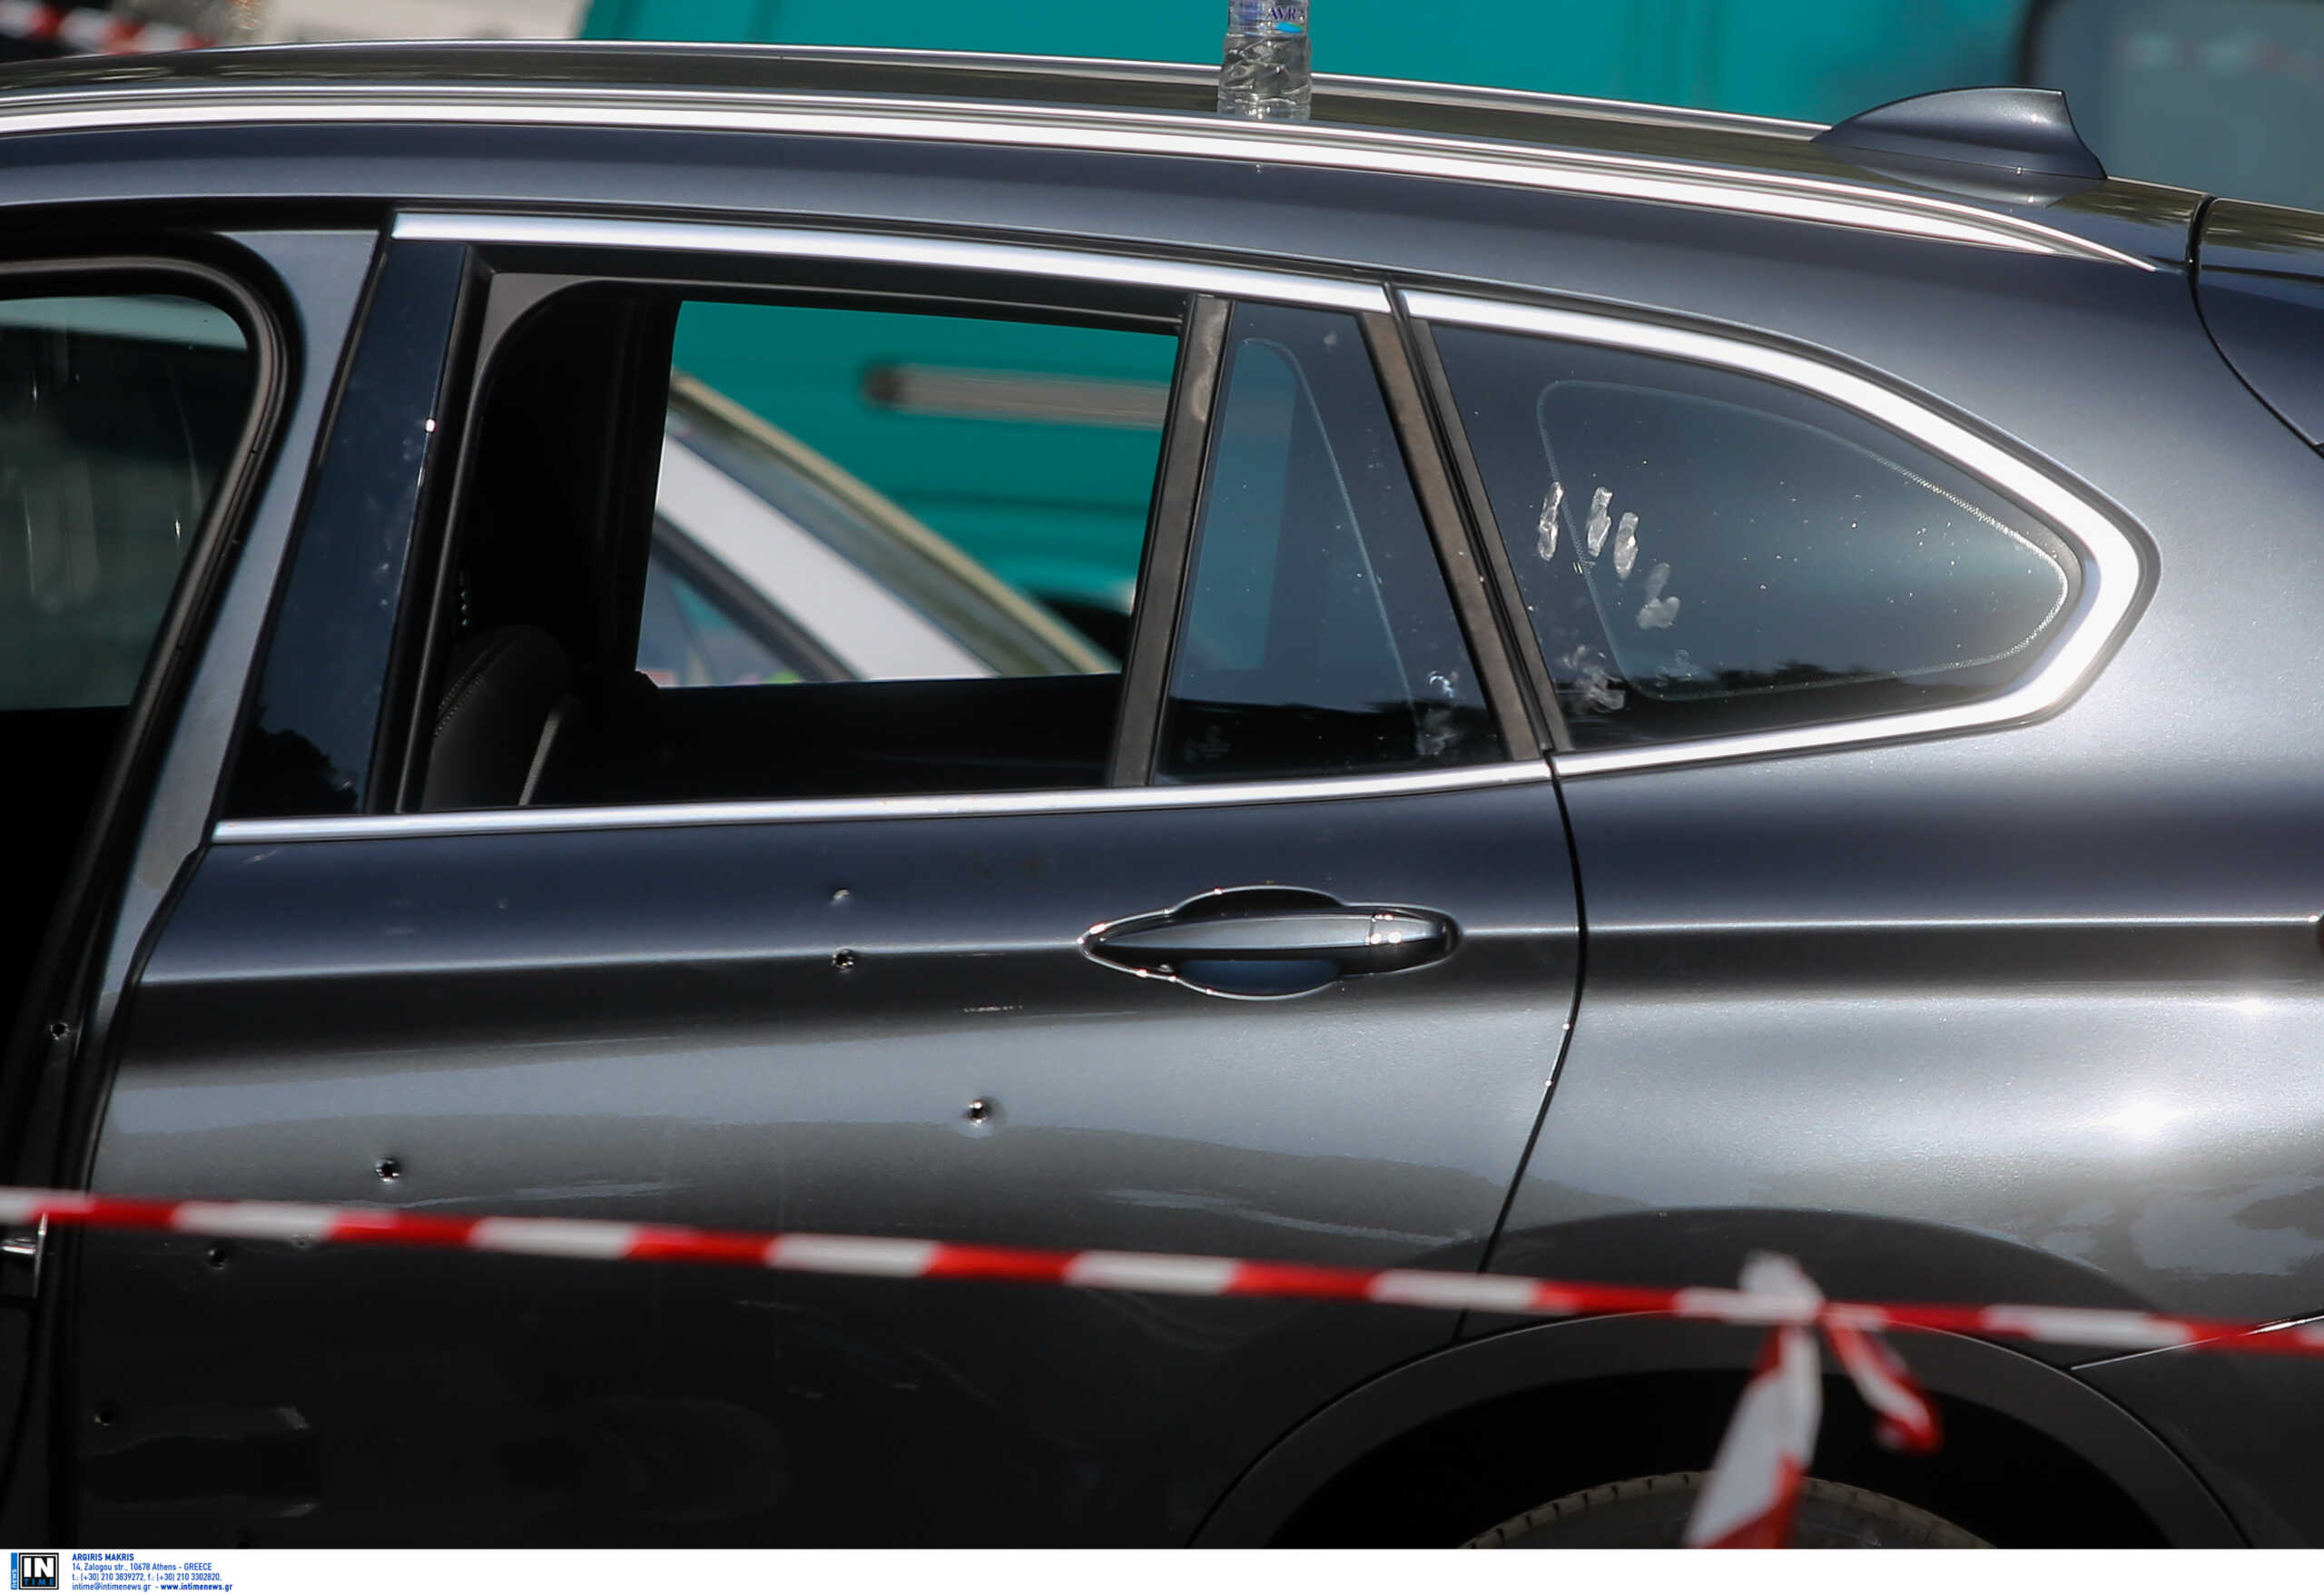 Θεσσαλονίκη: Νεκρή γυναίκα μέσα σε αυτοκίνητο στη Χαλκηδόνα, φόβοι για έγκλημα